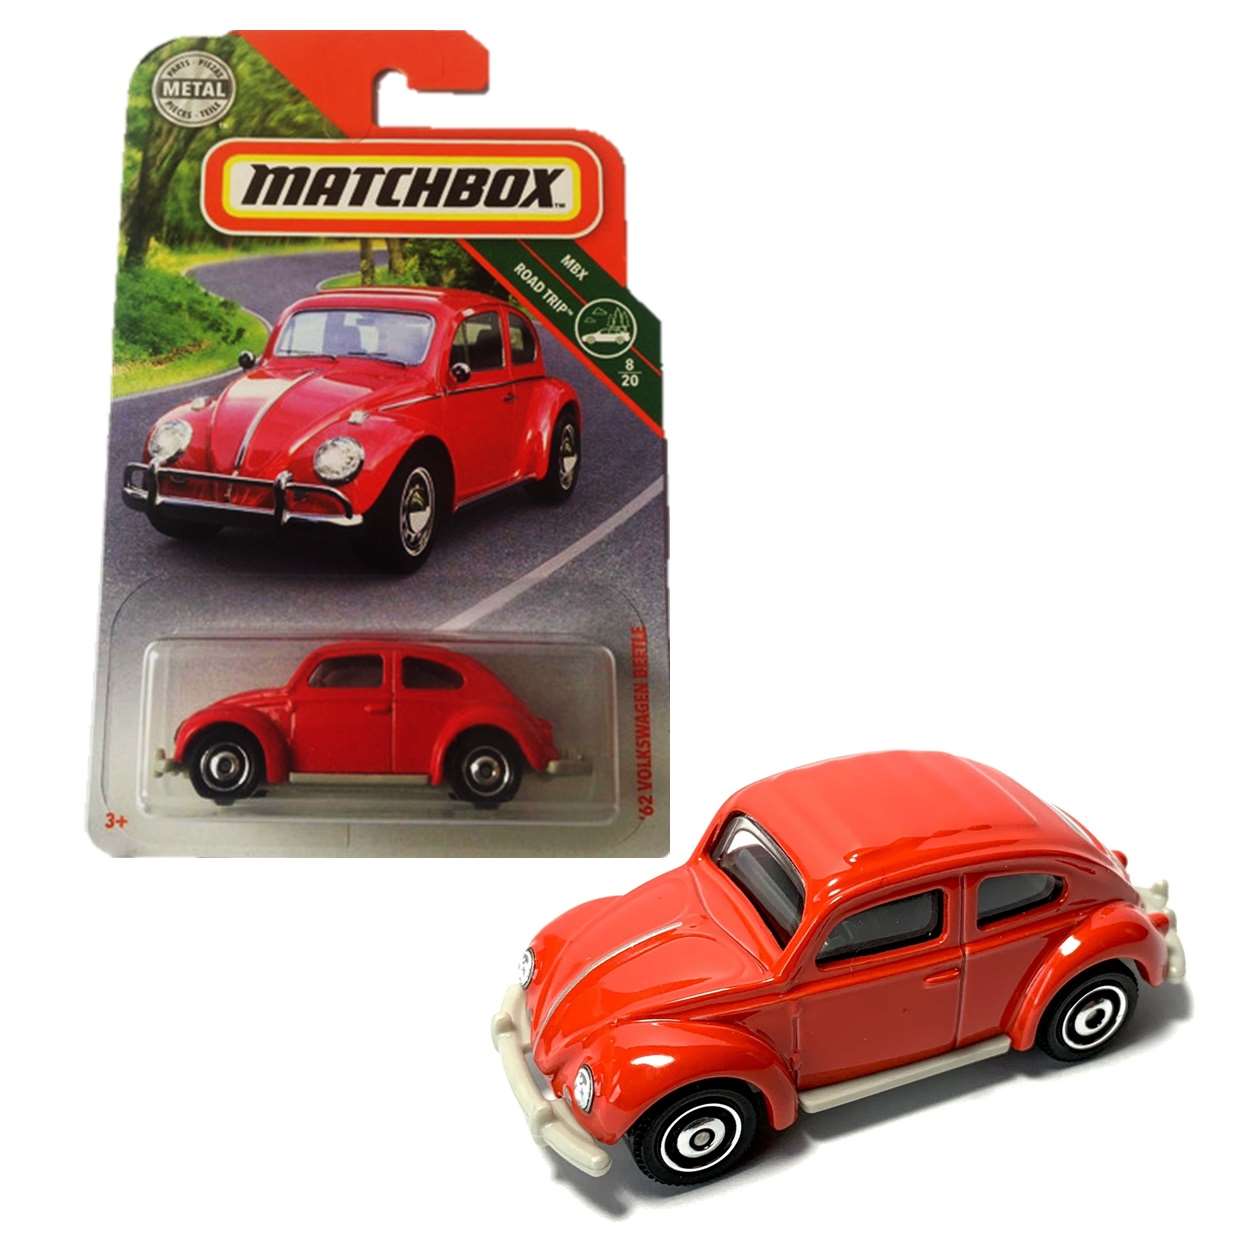 62 Volkswagen Beetle 8/20 Matchbox Mbx Road Trip